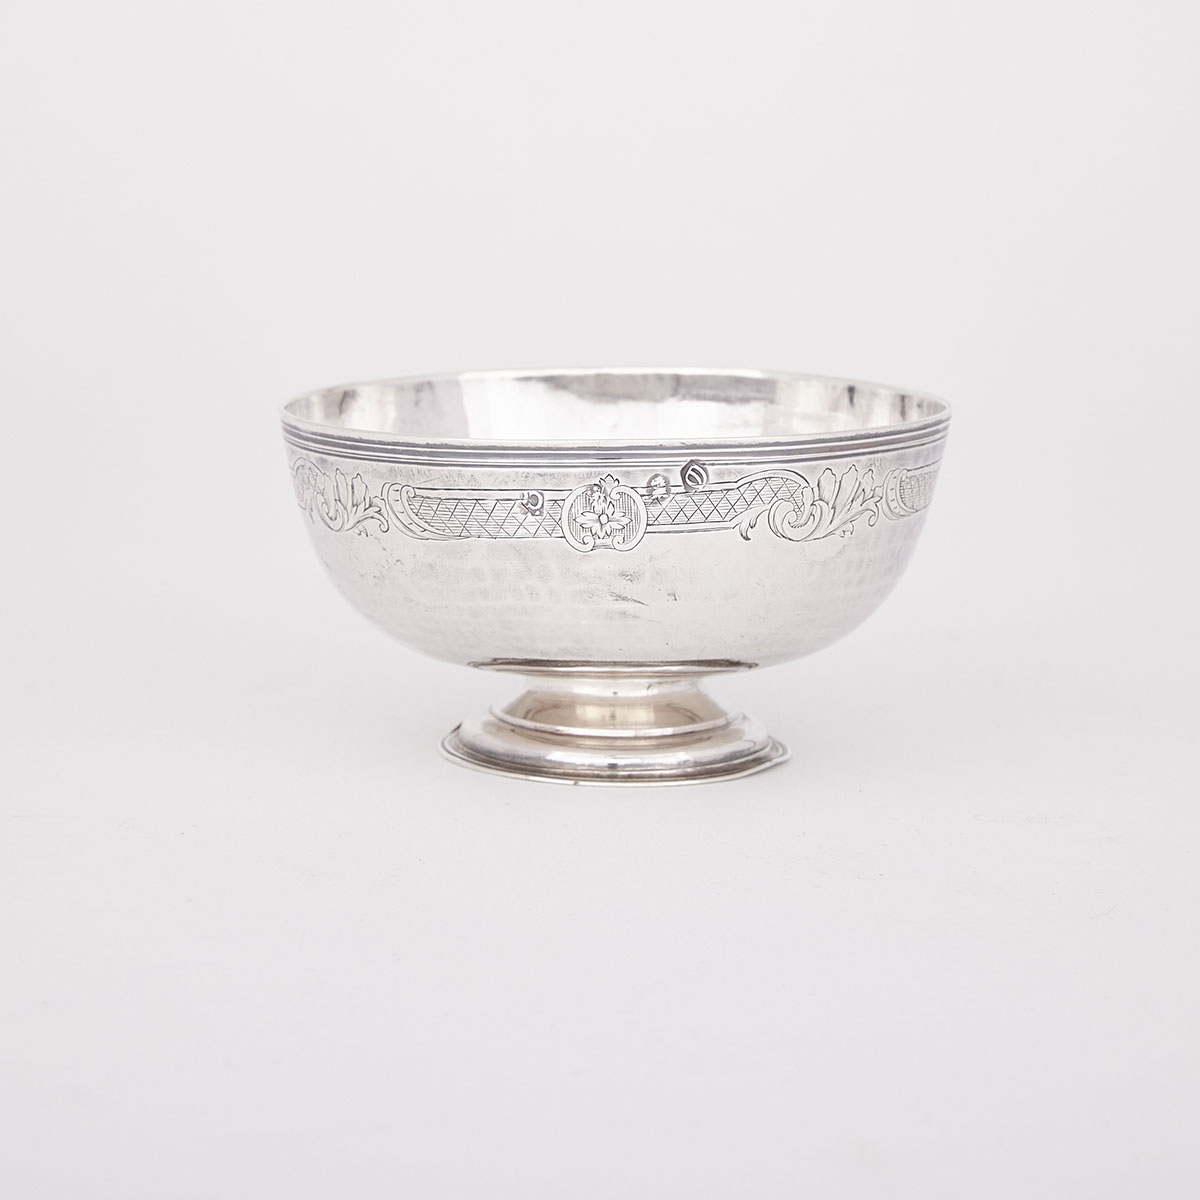 Queen Anne Silver Sugar Bowl, London, 1713